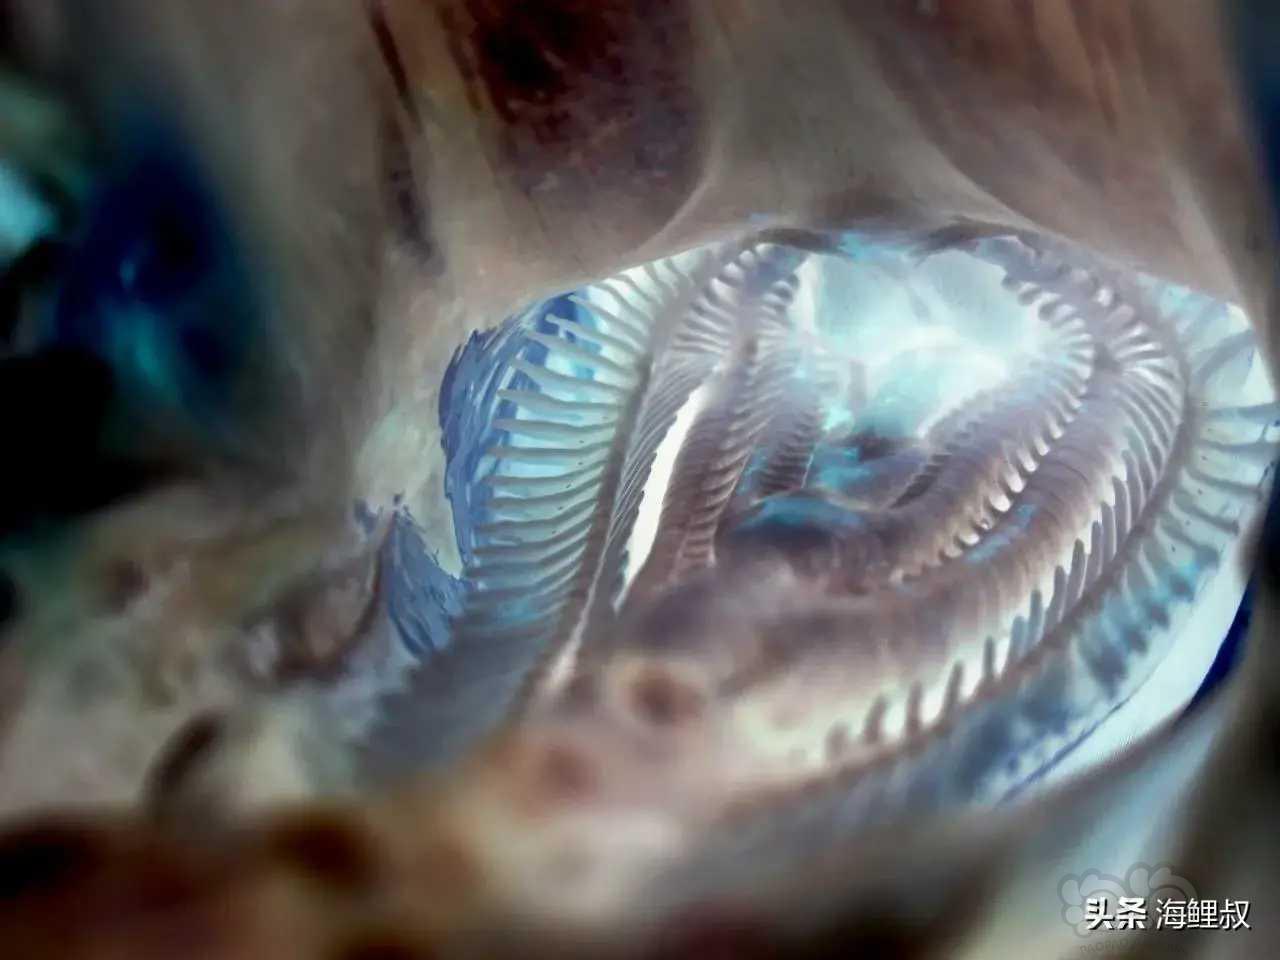 亚成鲣鱼的口腔内拍摄的照片-图2